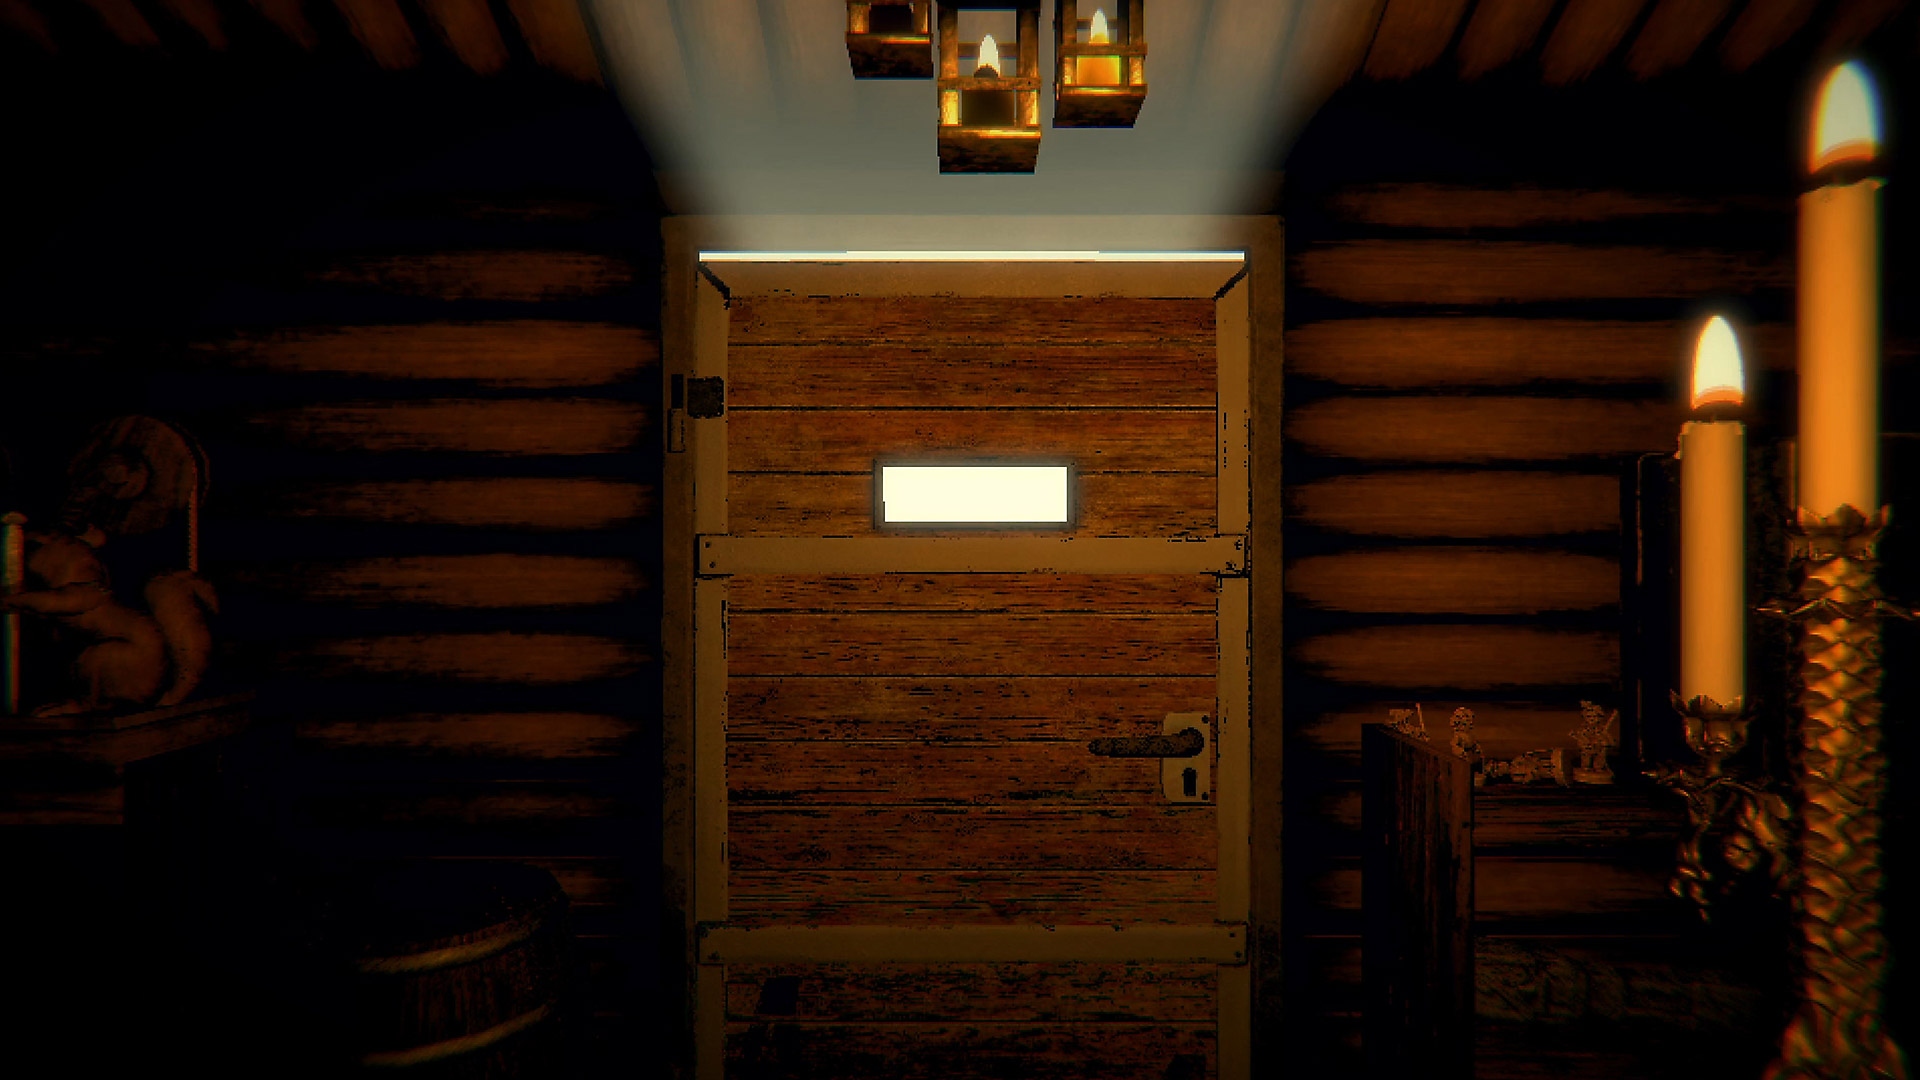 Captura de pantalla del juego de Inscryption con una puerta de madera cerrada en un pasillo a la luz de las velas.